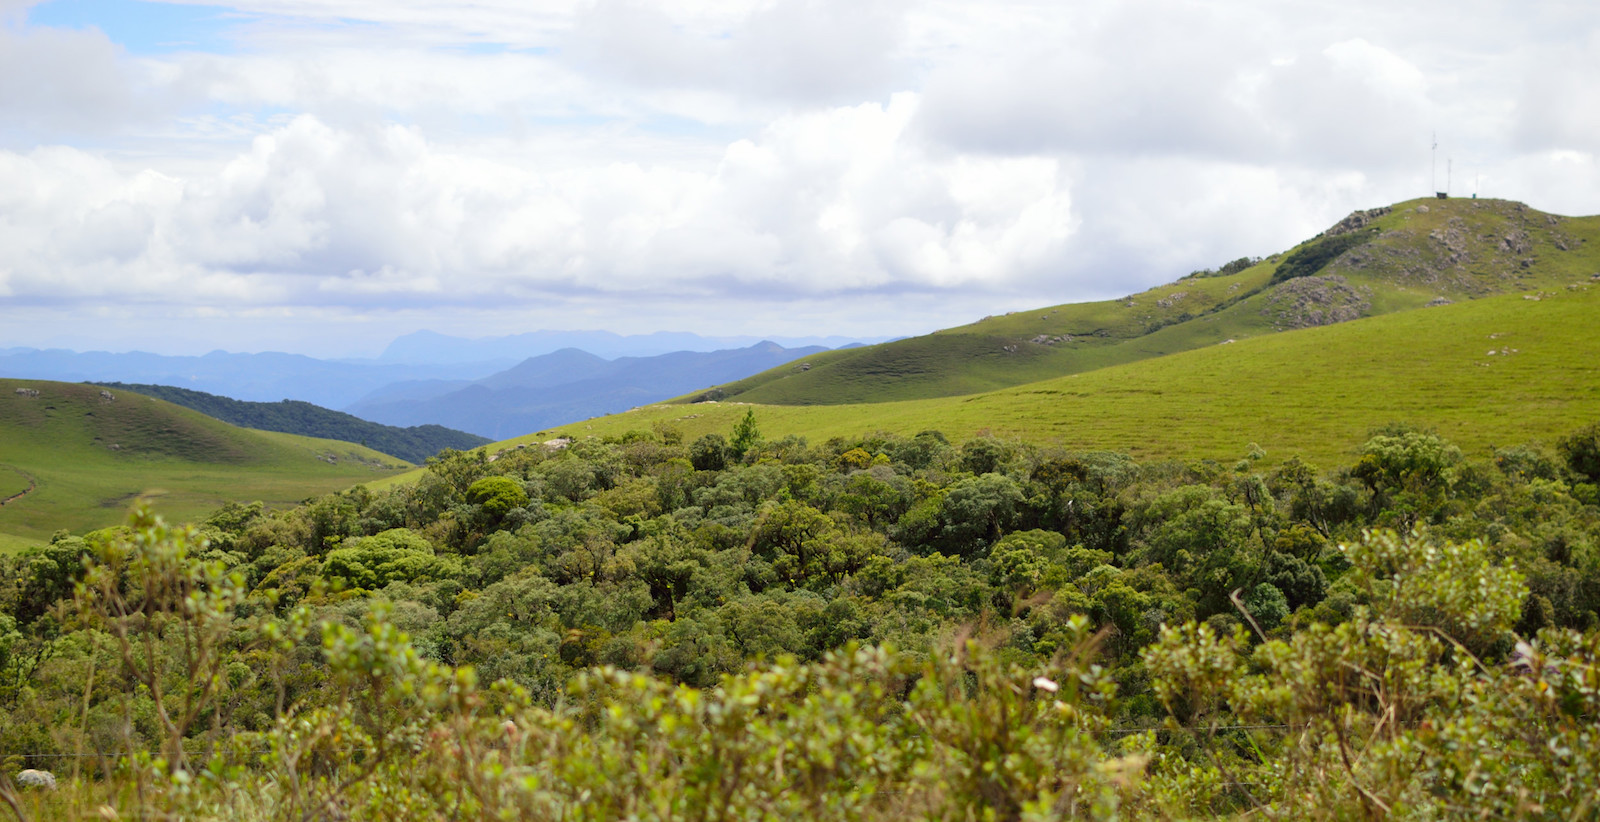 Figura 12: No altiplano dos Campos do Quiriri. A antena provavelmente é utilizada pelos moradores locais. O vale lá embaixo é o do Rio Quiriri, que fornece água a Joinville. As montanhas cobertas por nuvens bem ao fundo provavelmente compõem a Serra Queimada, que também atinge grande altitude.